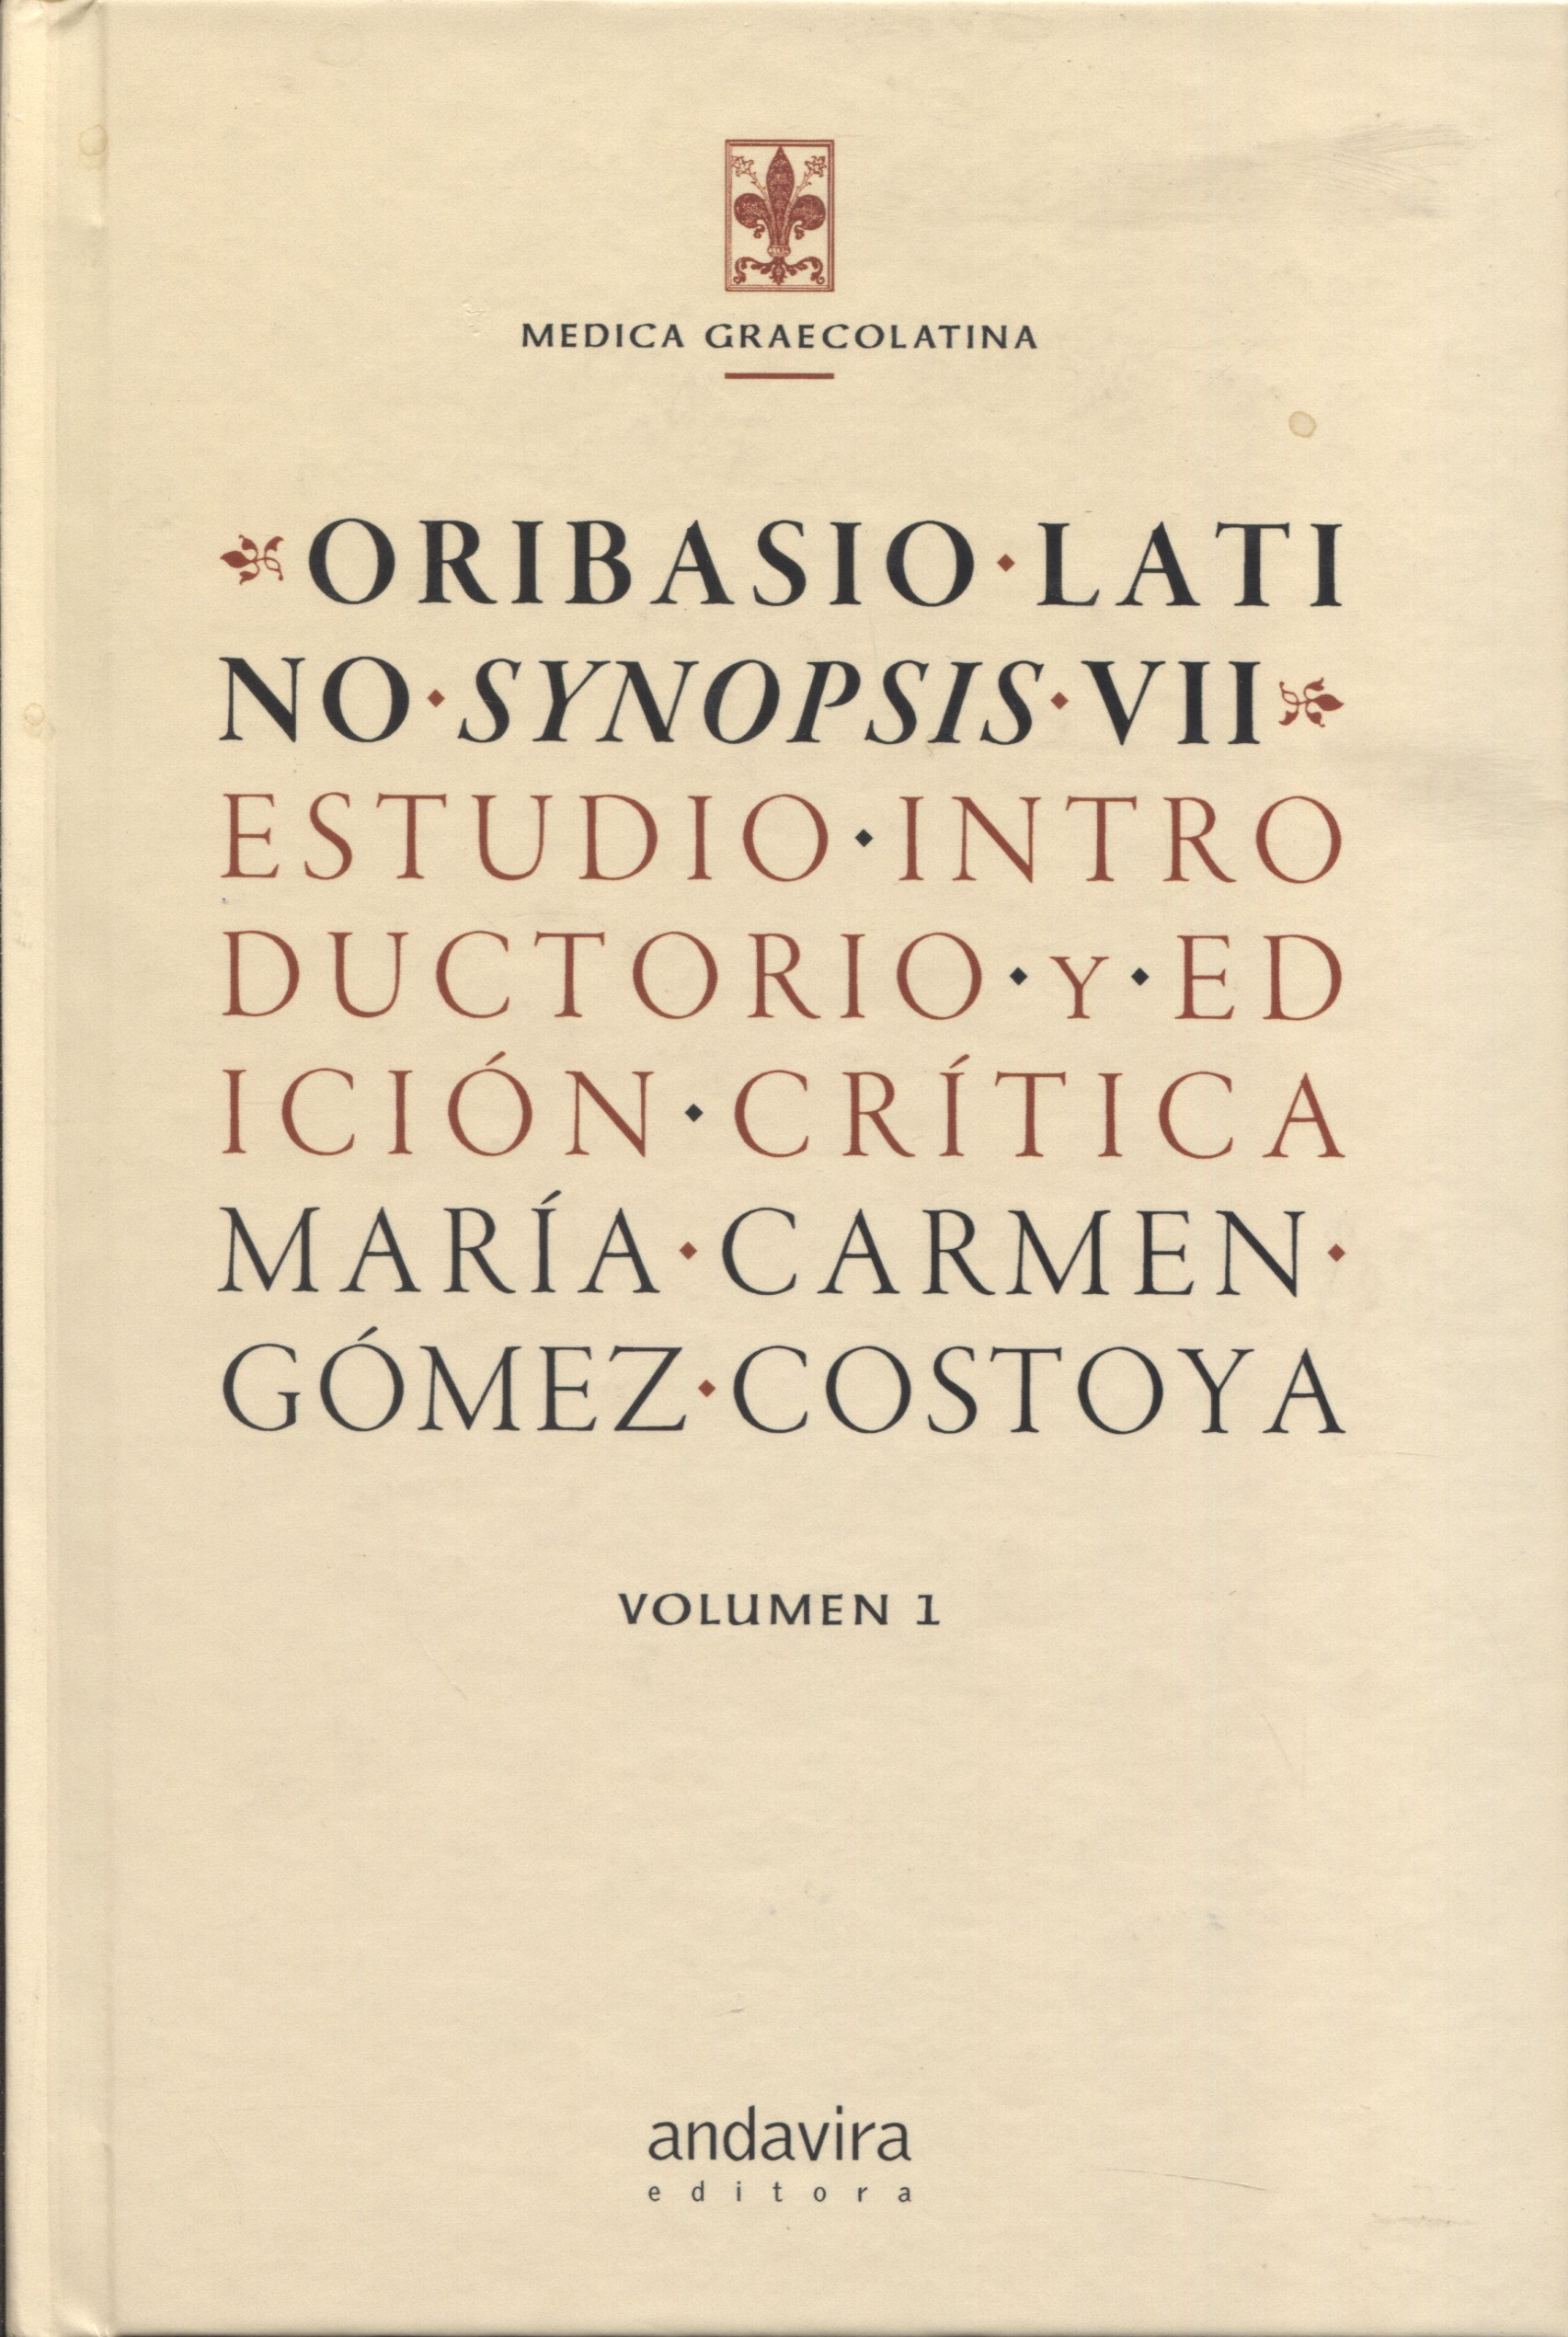 Oribasio Latino Synopsis VII